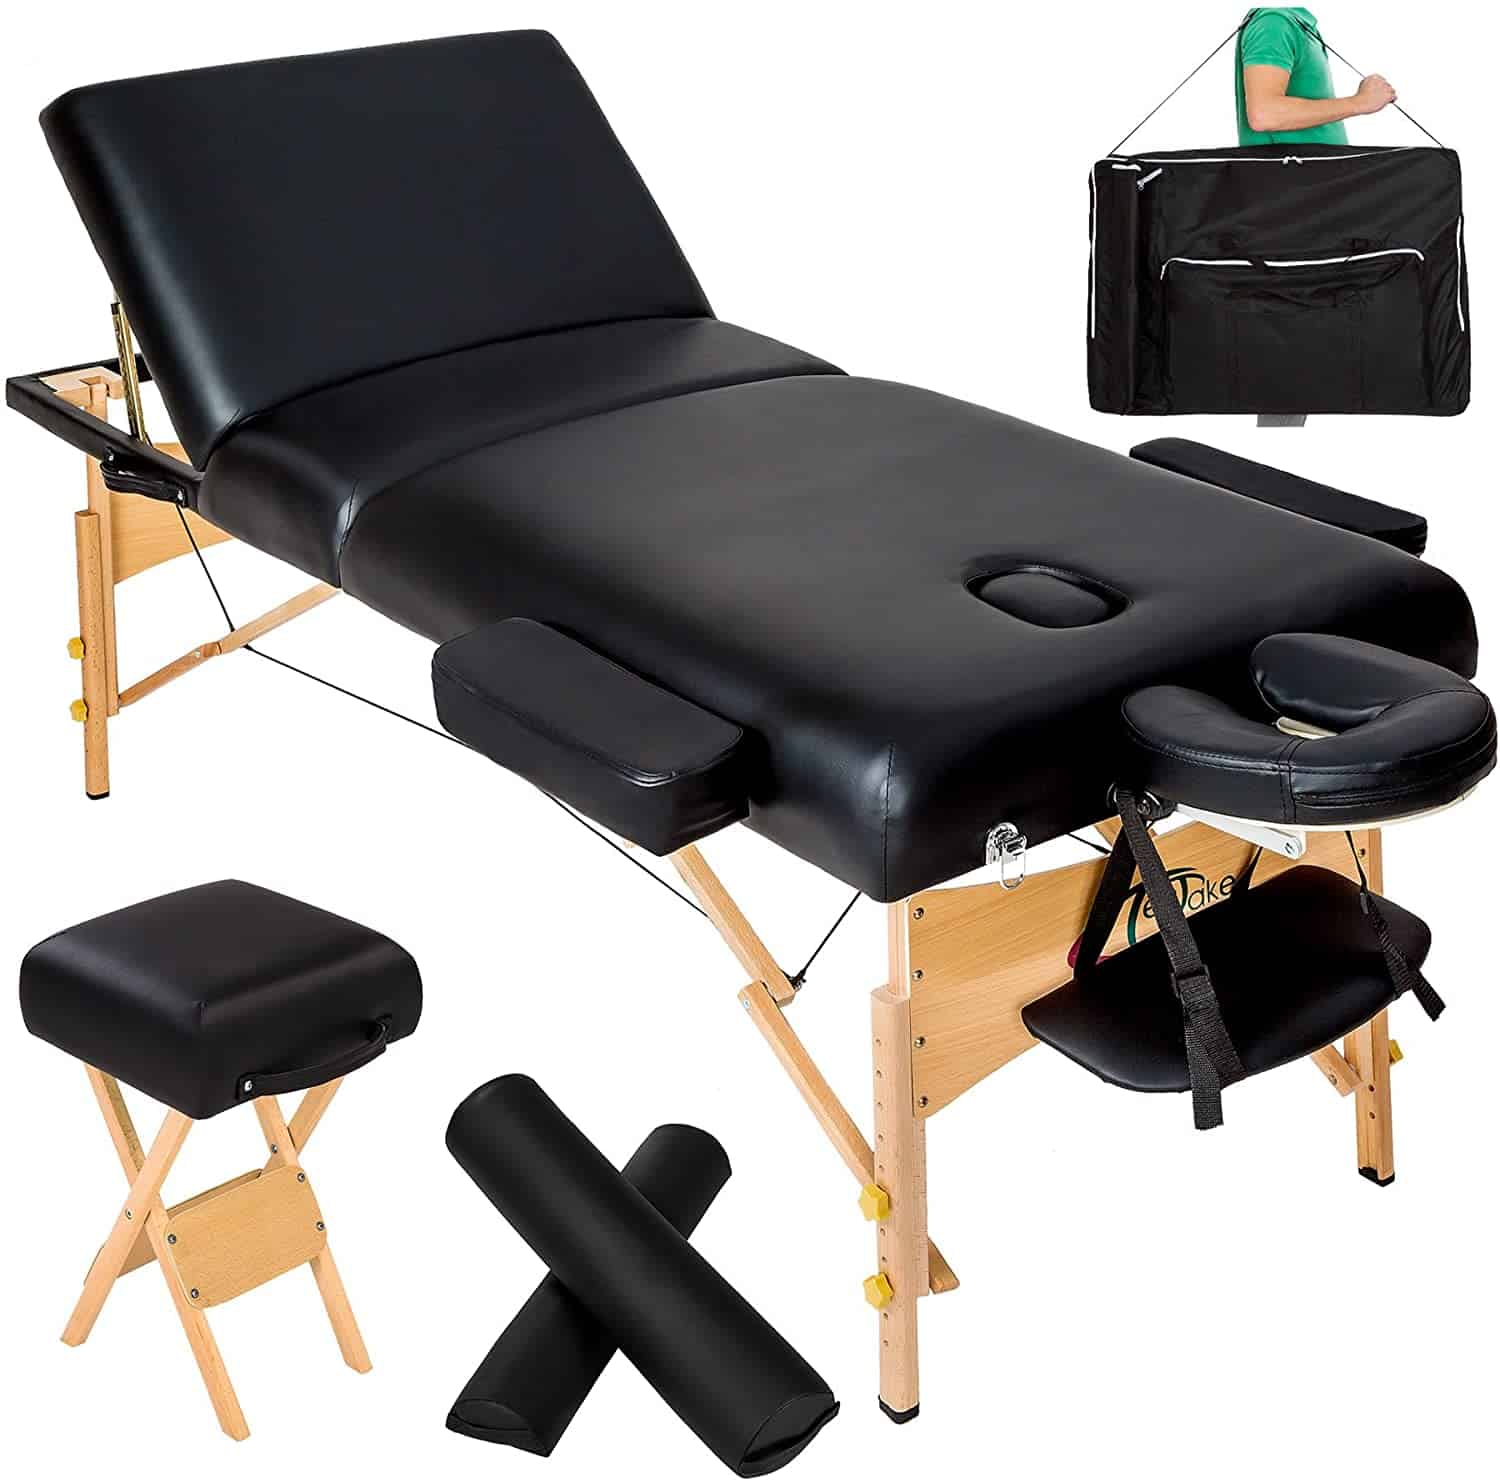 Table de massage Matériel Conseillé pour un massage agréable